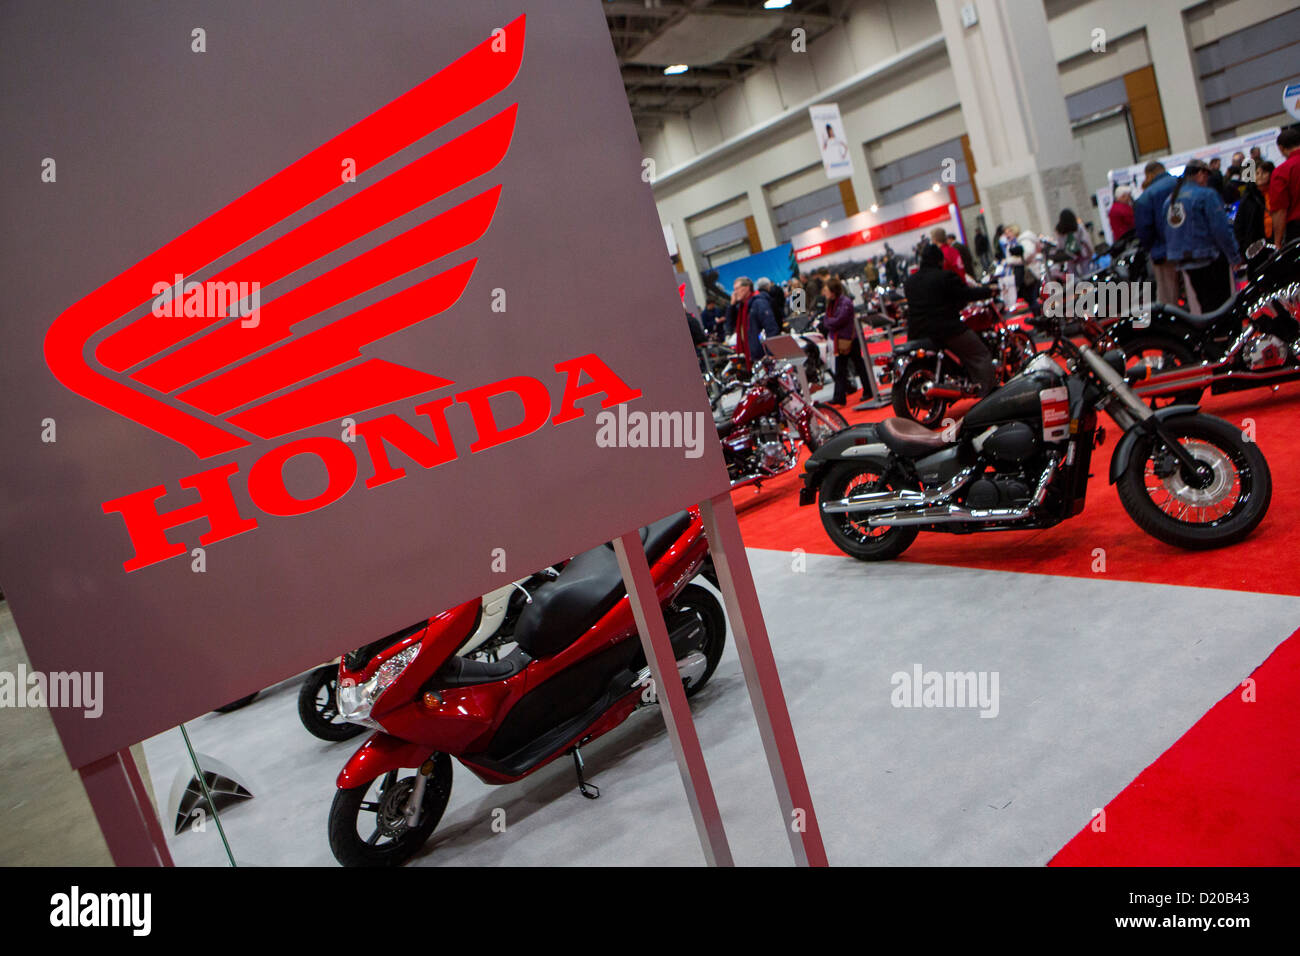 Honda motorcycles on display at the Washington Motorcycle Show. Stock Photo